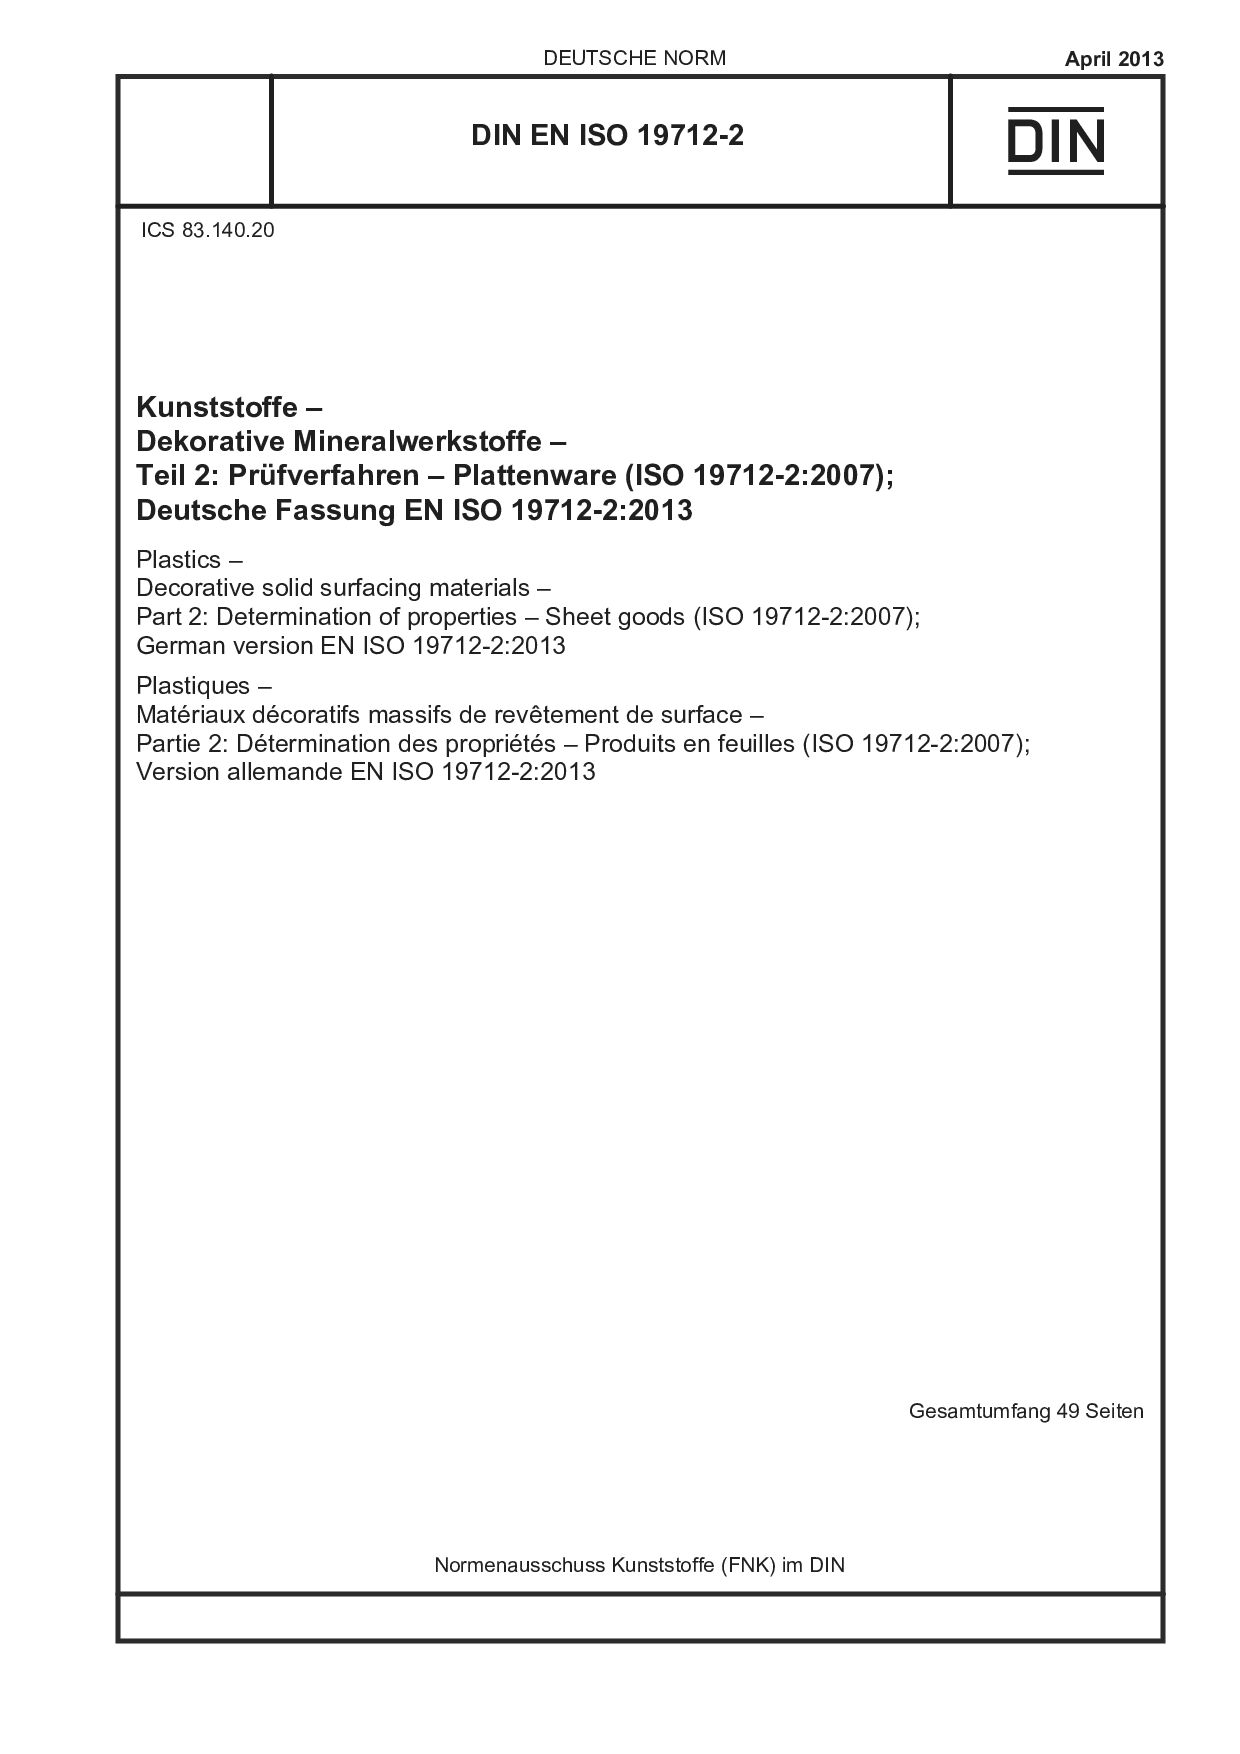 DIN EN ISO 19712-2:2013